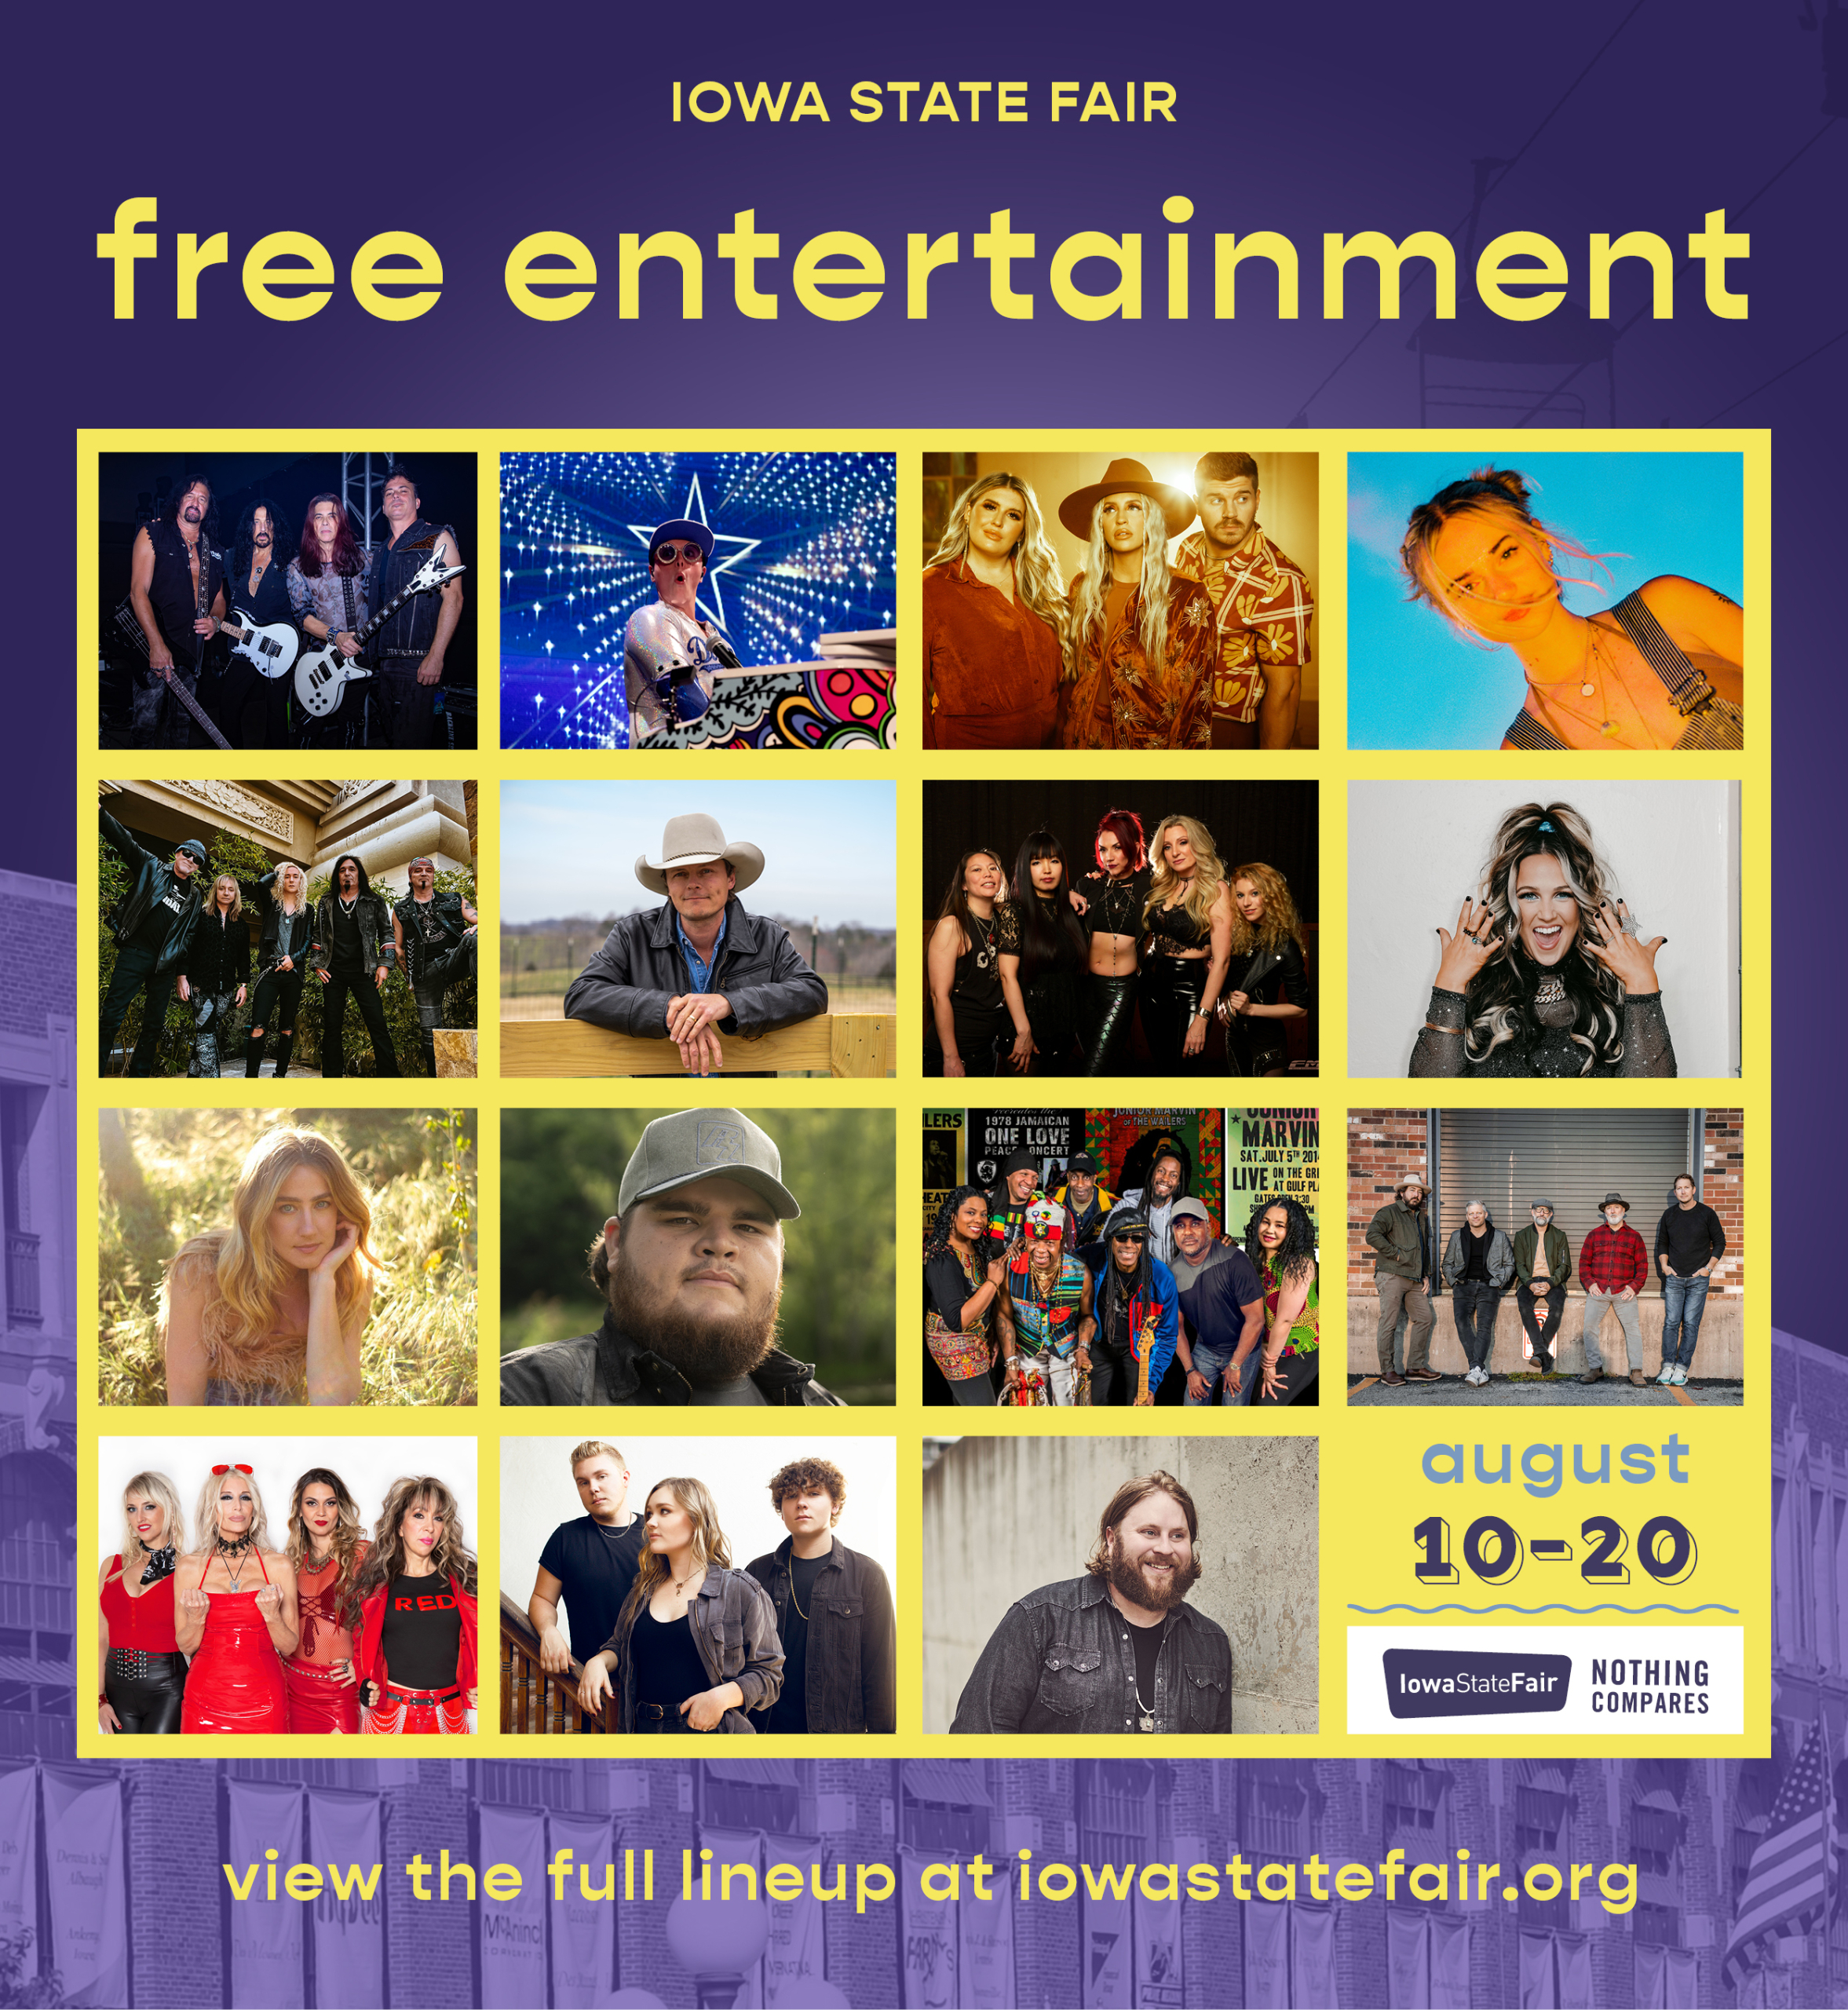 Iowa State Fair Free Entertainment Announce